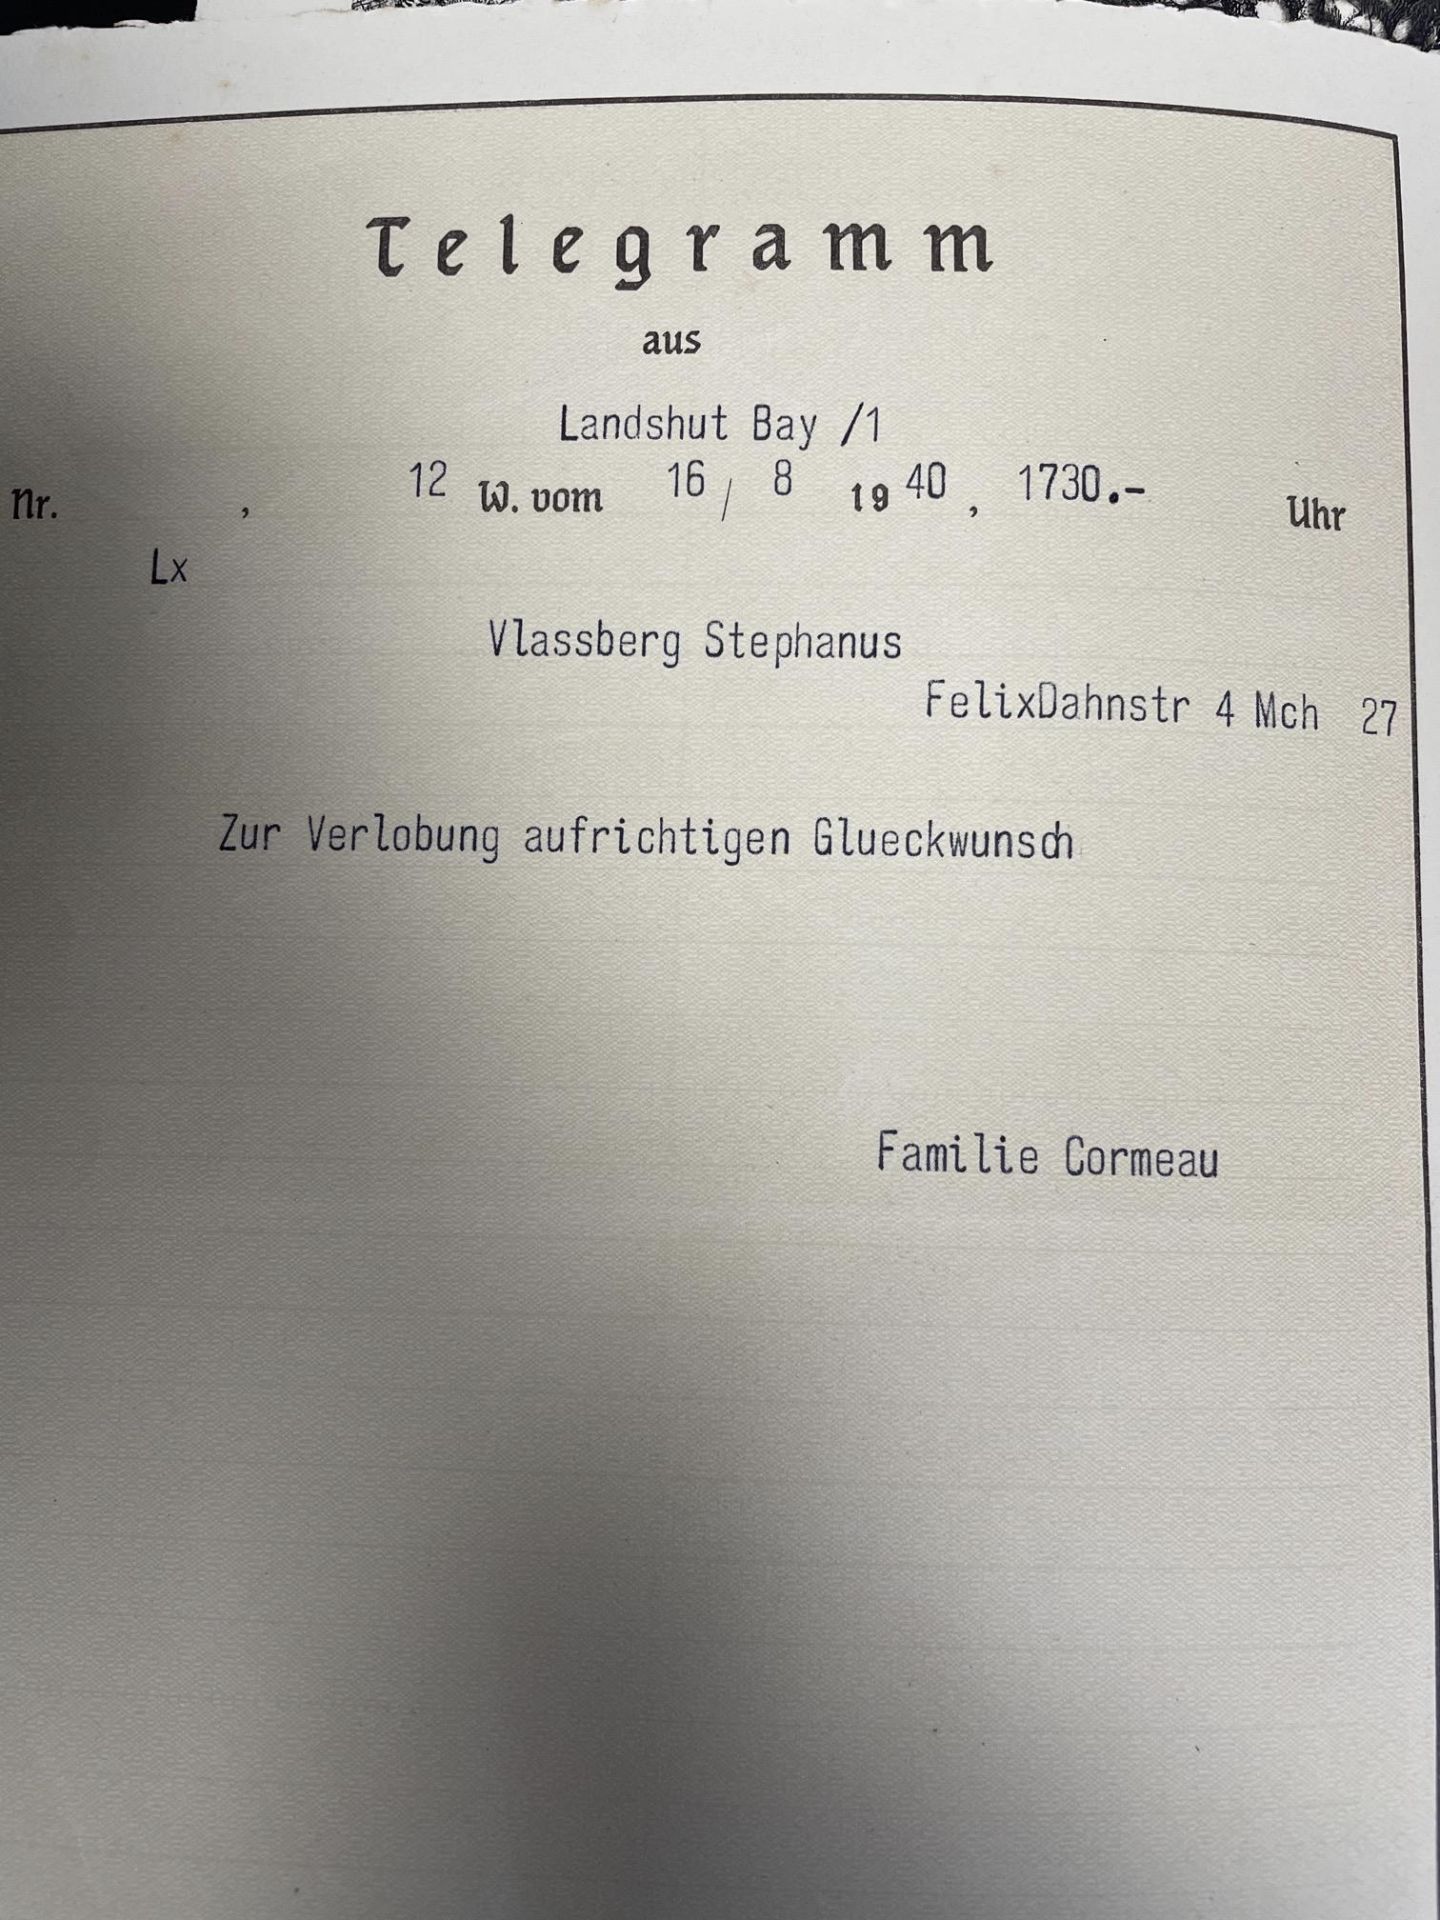 Telegrammes allemand. German telegrams. - Bild 2 aus 2